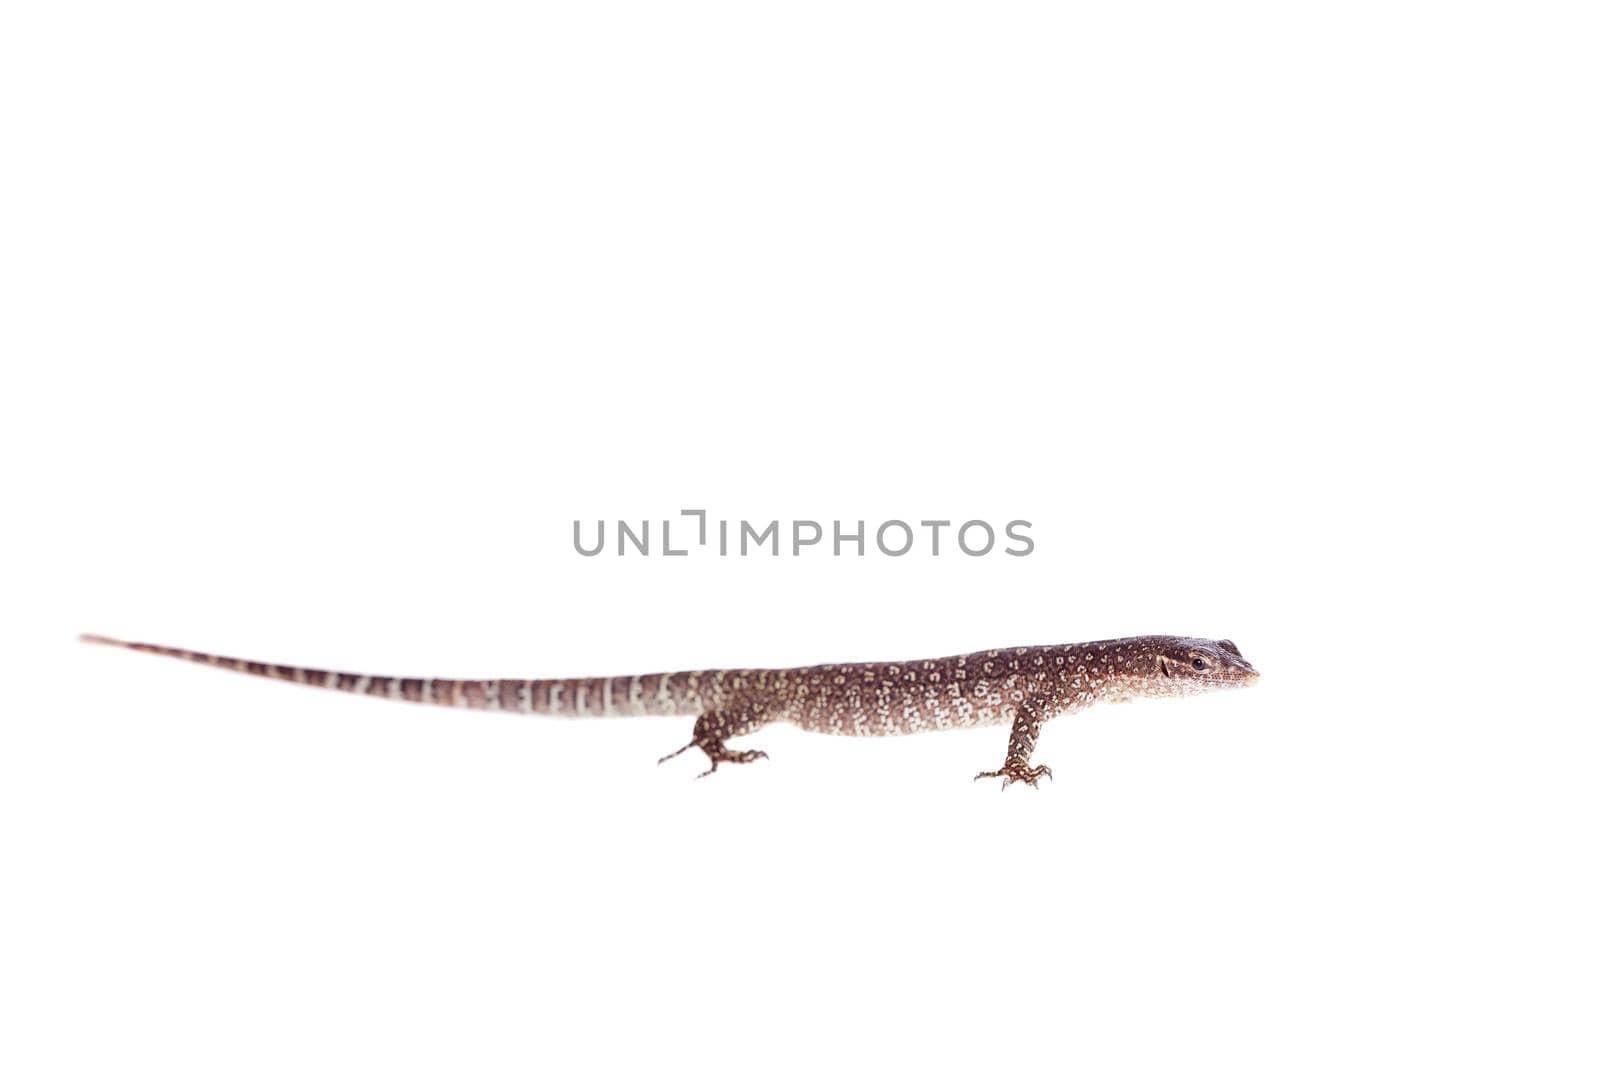 Asian Water Monitor Lizard, Varanus salvator, isolated on white background.